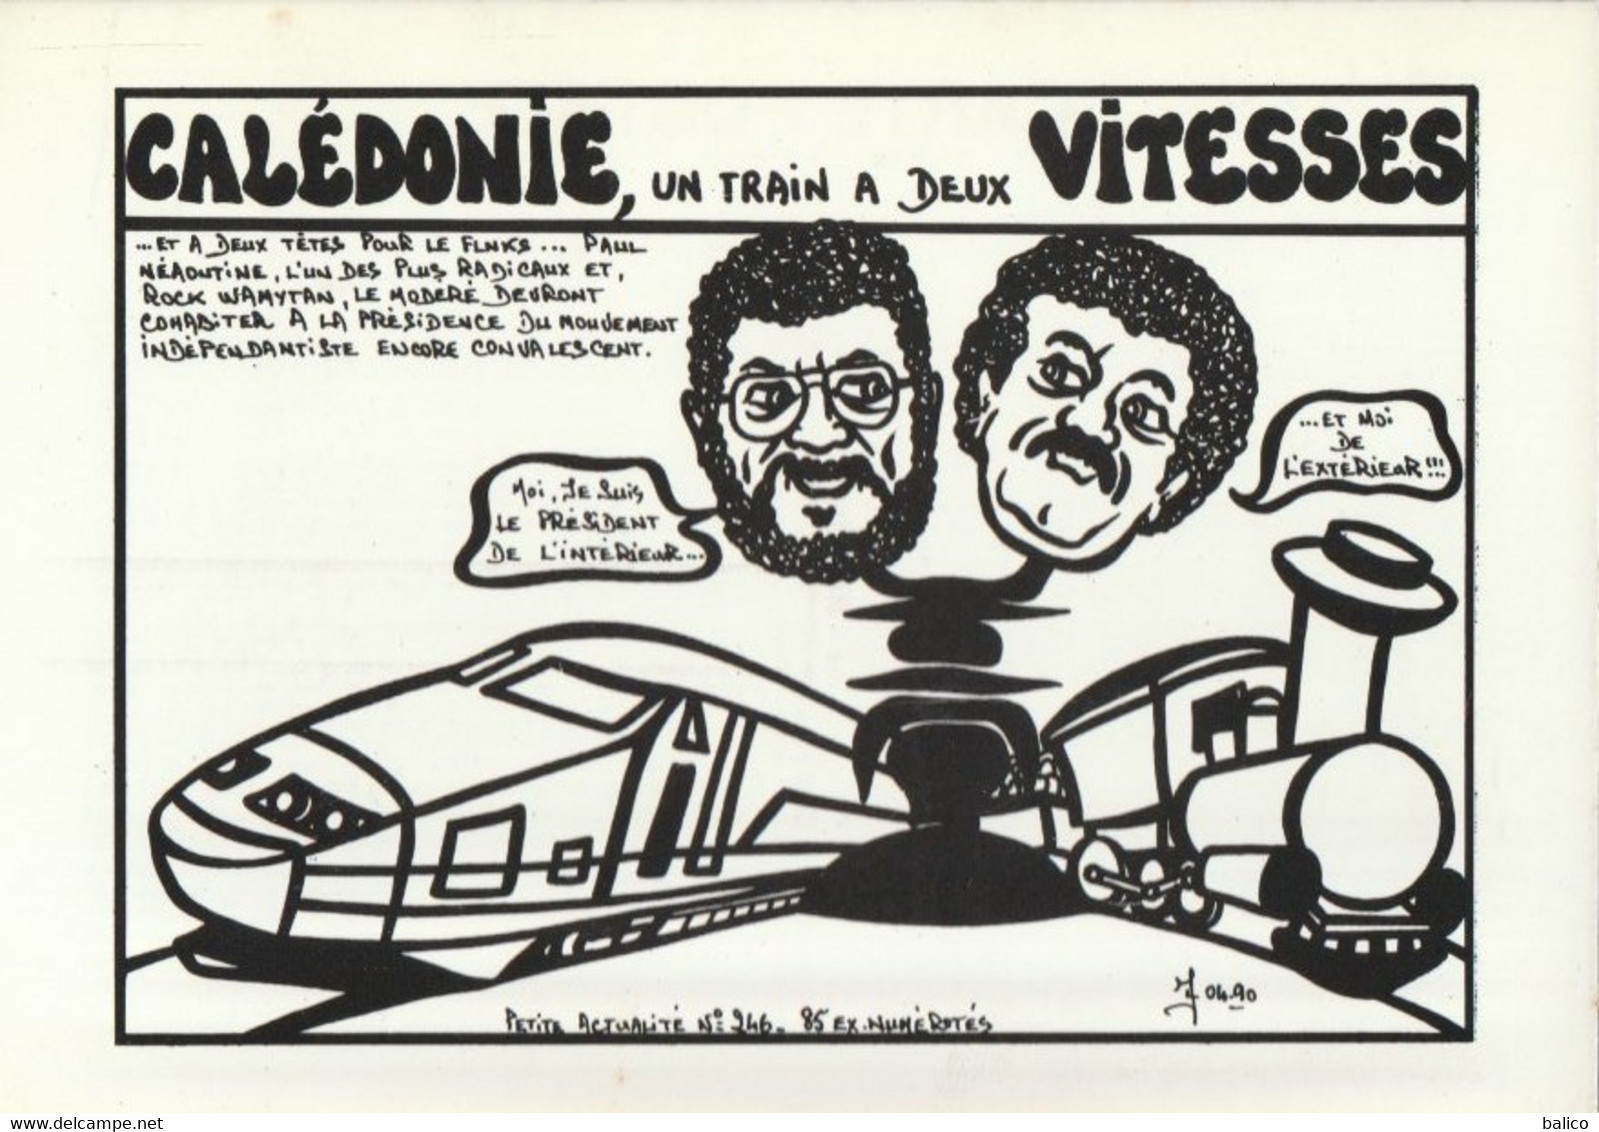 Calédonie, Un Train à Deux Vitesses - Dessins De Jacques Lardie 1988 - Tirage Limité 85 Exemplaires N° 75 - Lardie